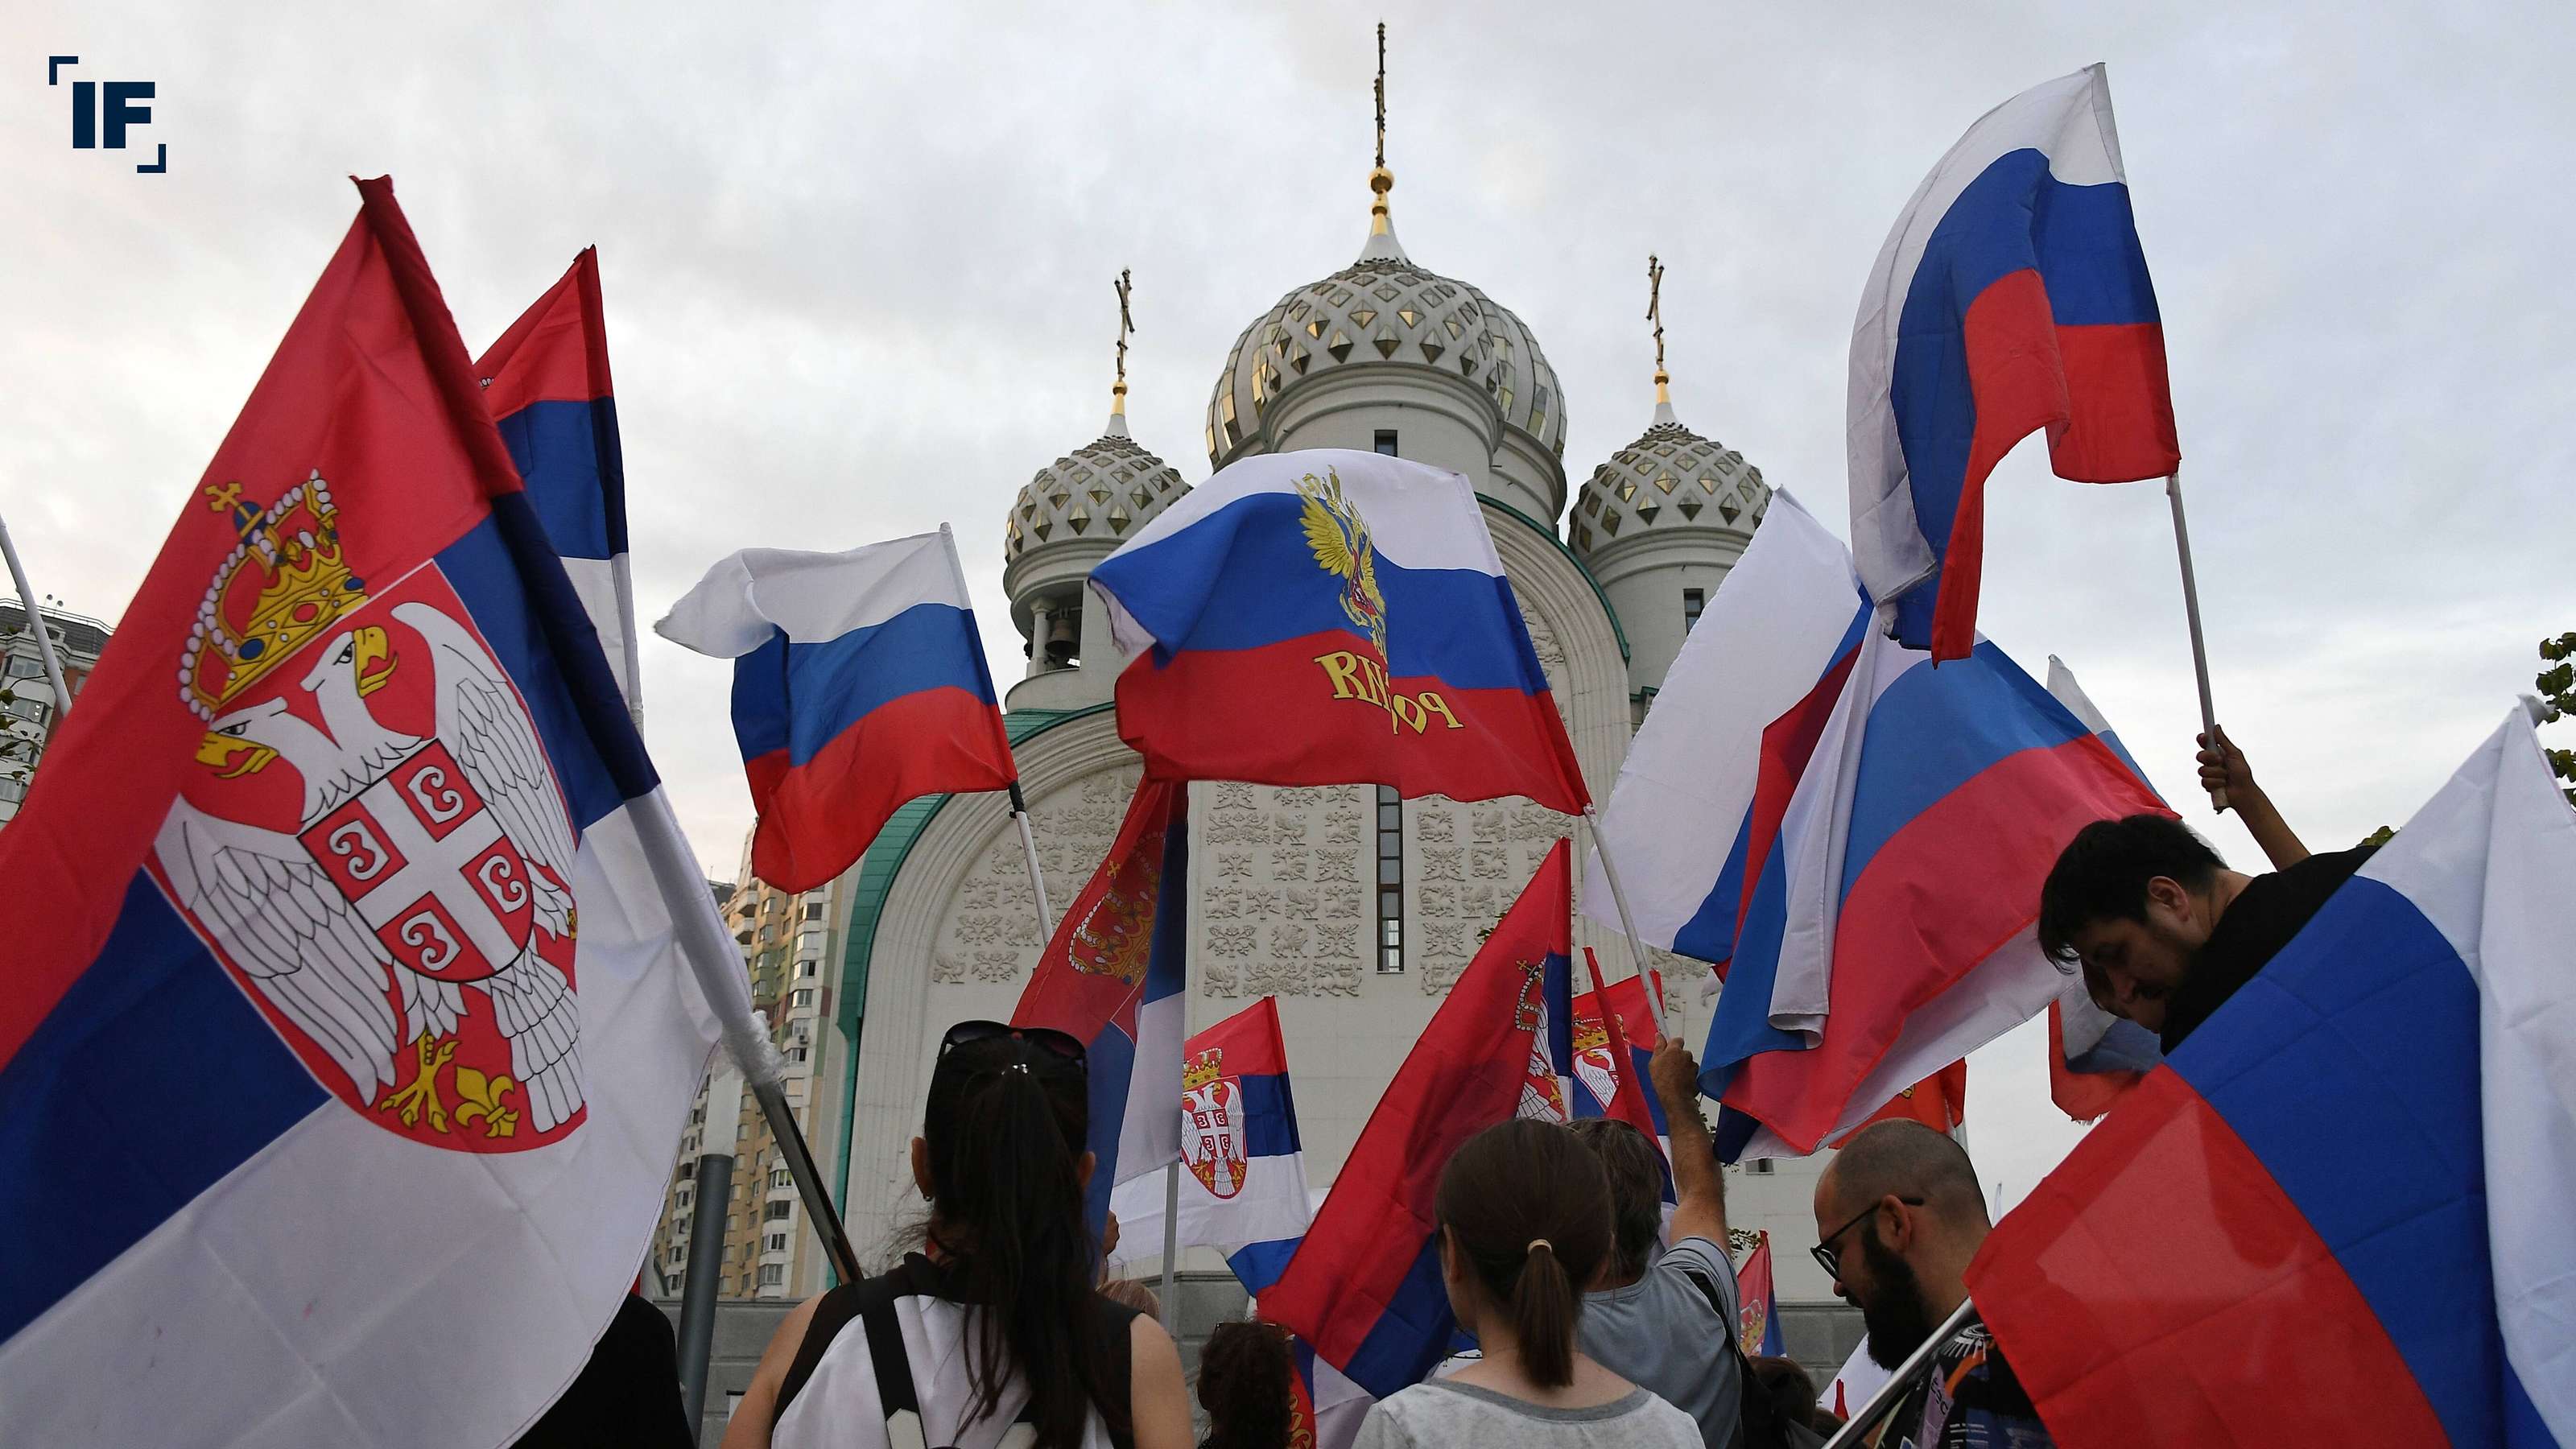 Die Flagge von Russland, ehemals Sowjetunion, Hauptstadt ist